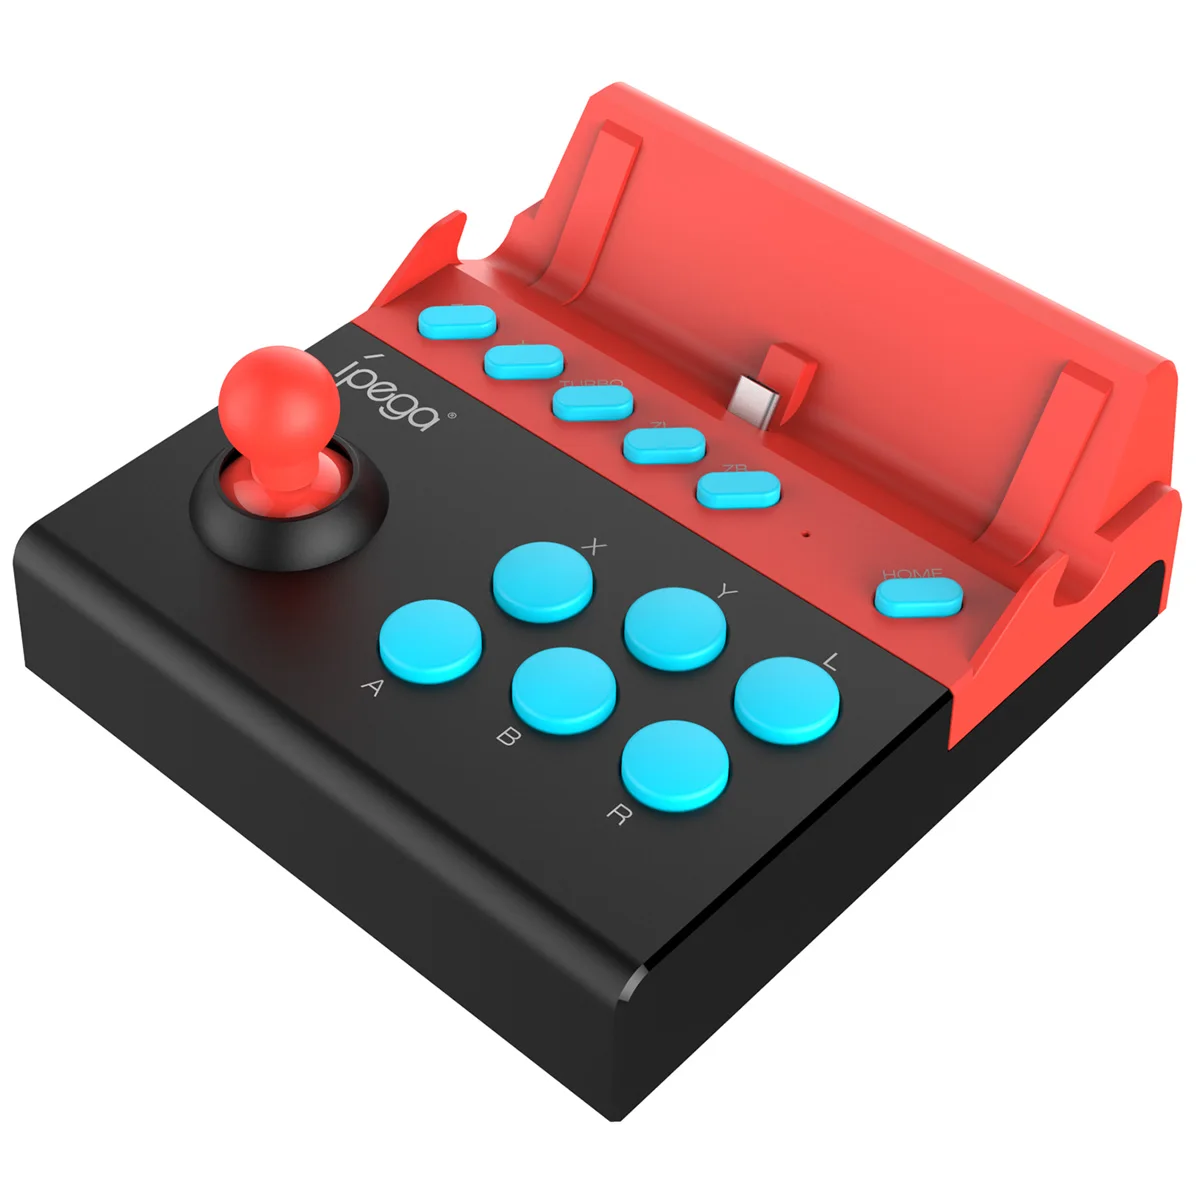 Igra navigacijsku tipku IPega PG-9136 za gamepad s jednim Joystickom Nintendo Switch Slika 1